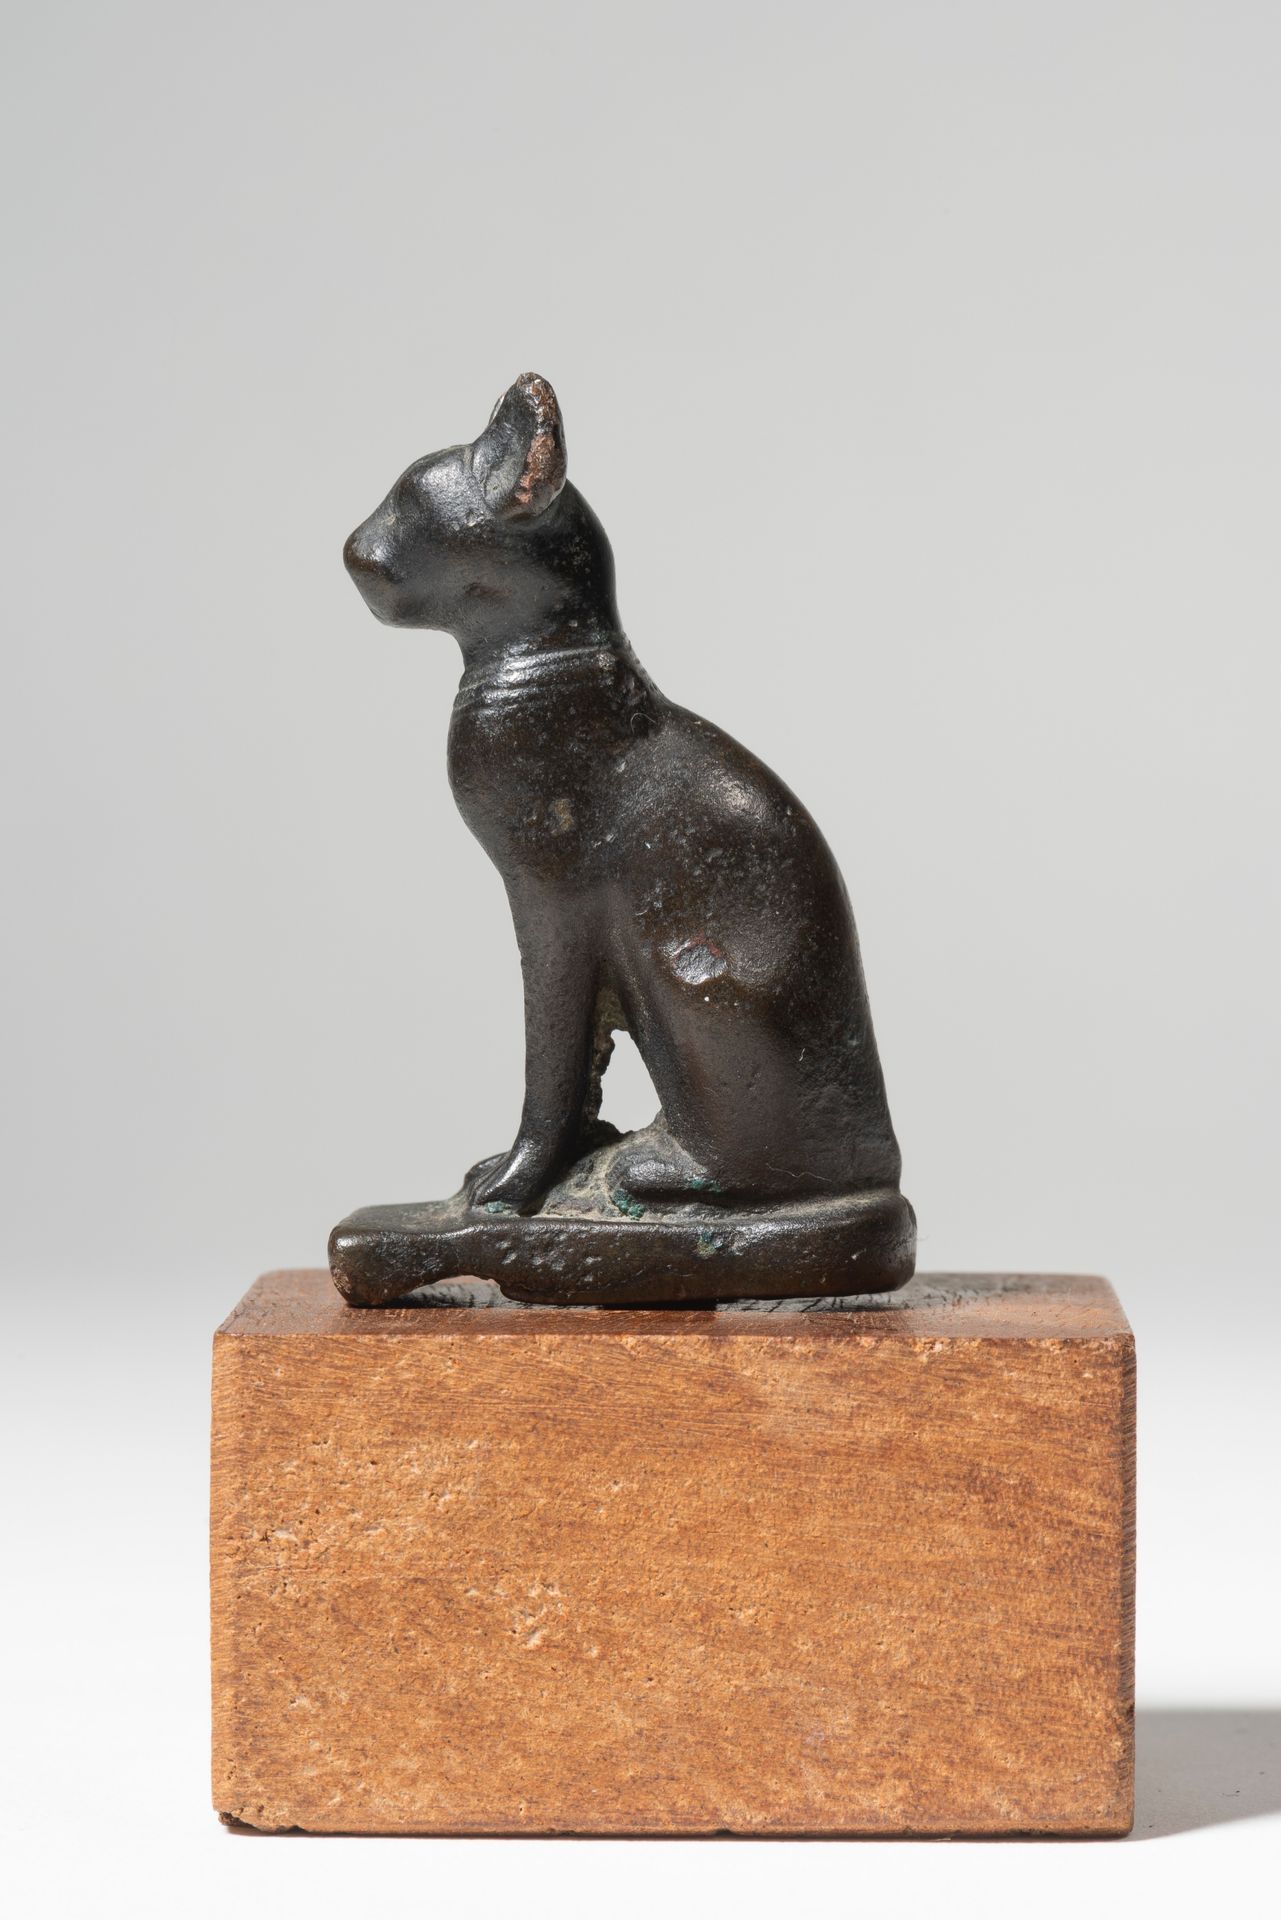 Statuette représentant la chatte Bastet assise 
ÄGYPTEN, SPÄTZEIT





Statuette&hellip;